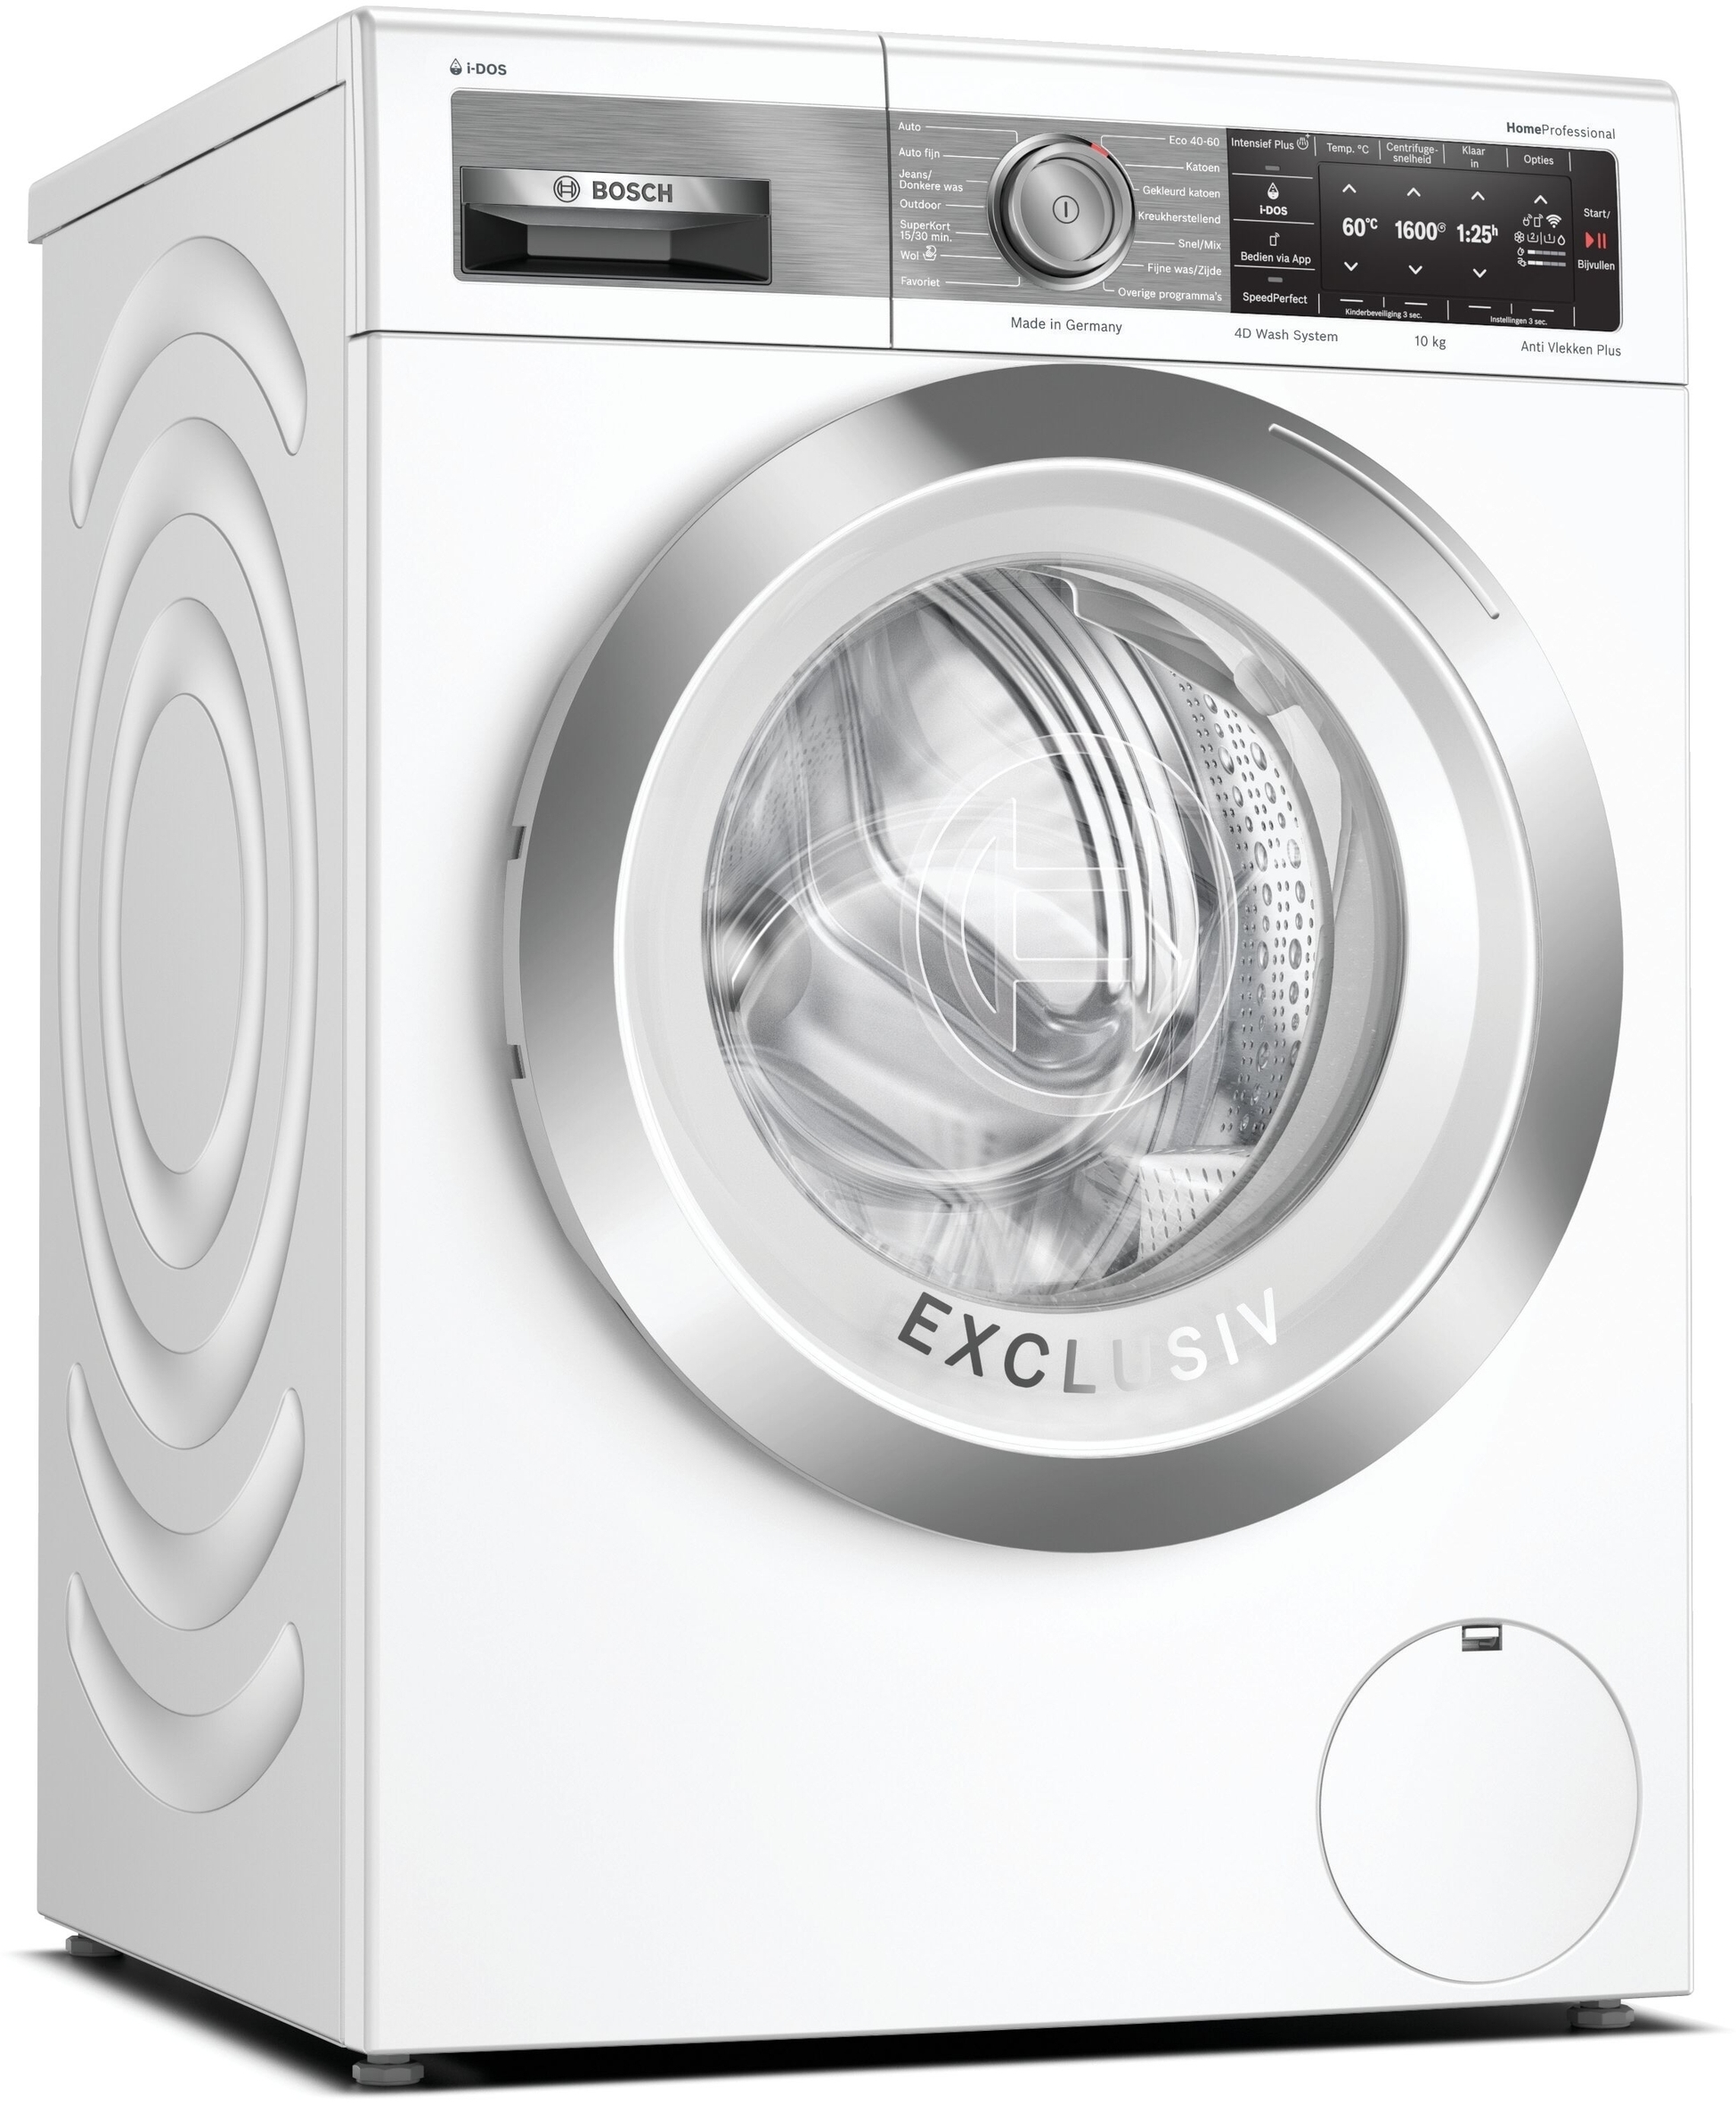 Regeneratie Compatibel met verzoek WAXH2E91NL Bosch wasmachine, 10 kg. en 1600 toeren